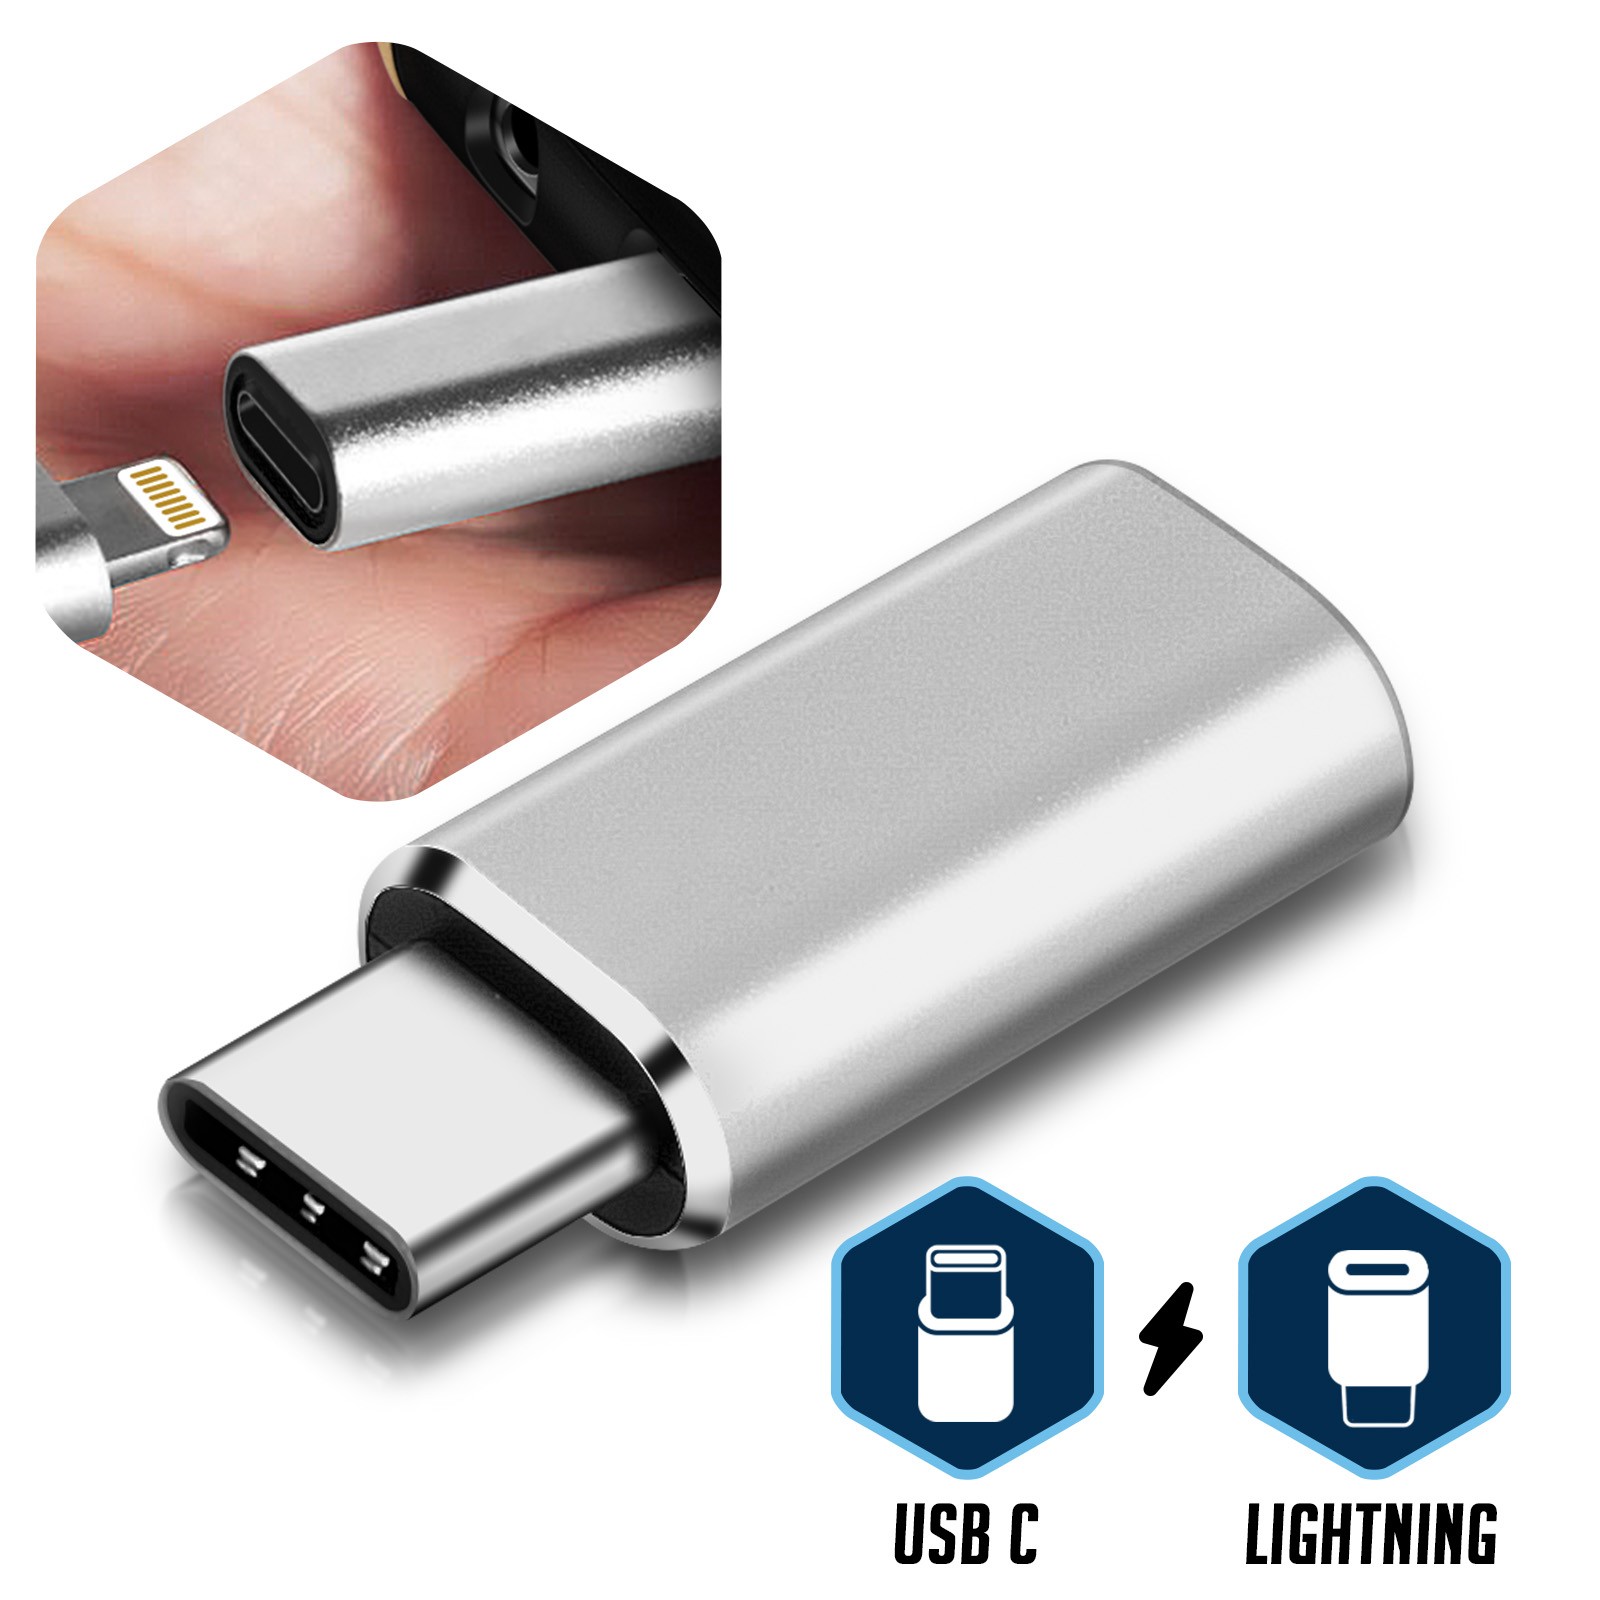 LG G8 et Autres. Adaptateur USB-C vers Lightning 8 Pin Pixel 4 3XL NO OTG USB Type-C vers Lightning iOS vers USB C 2un PS5 Adaptateur de Charge et de Transfert de données pour S21 S20 Note 10 